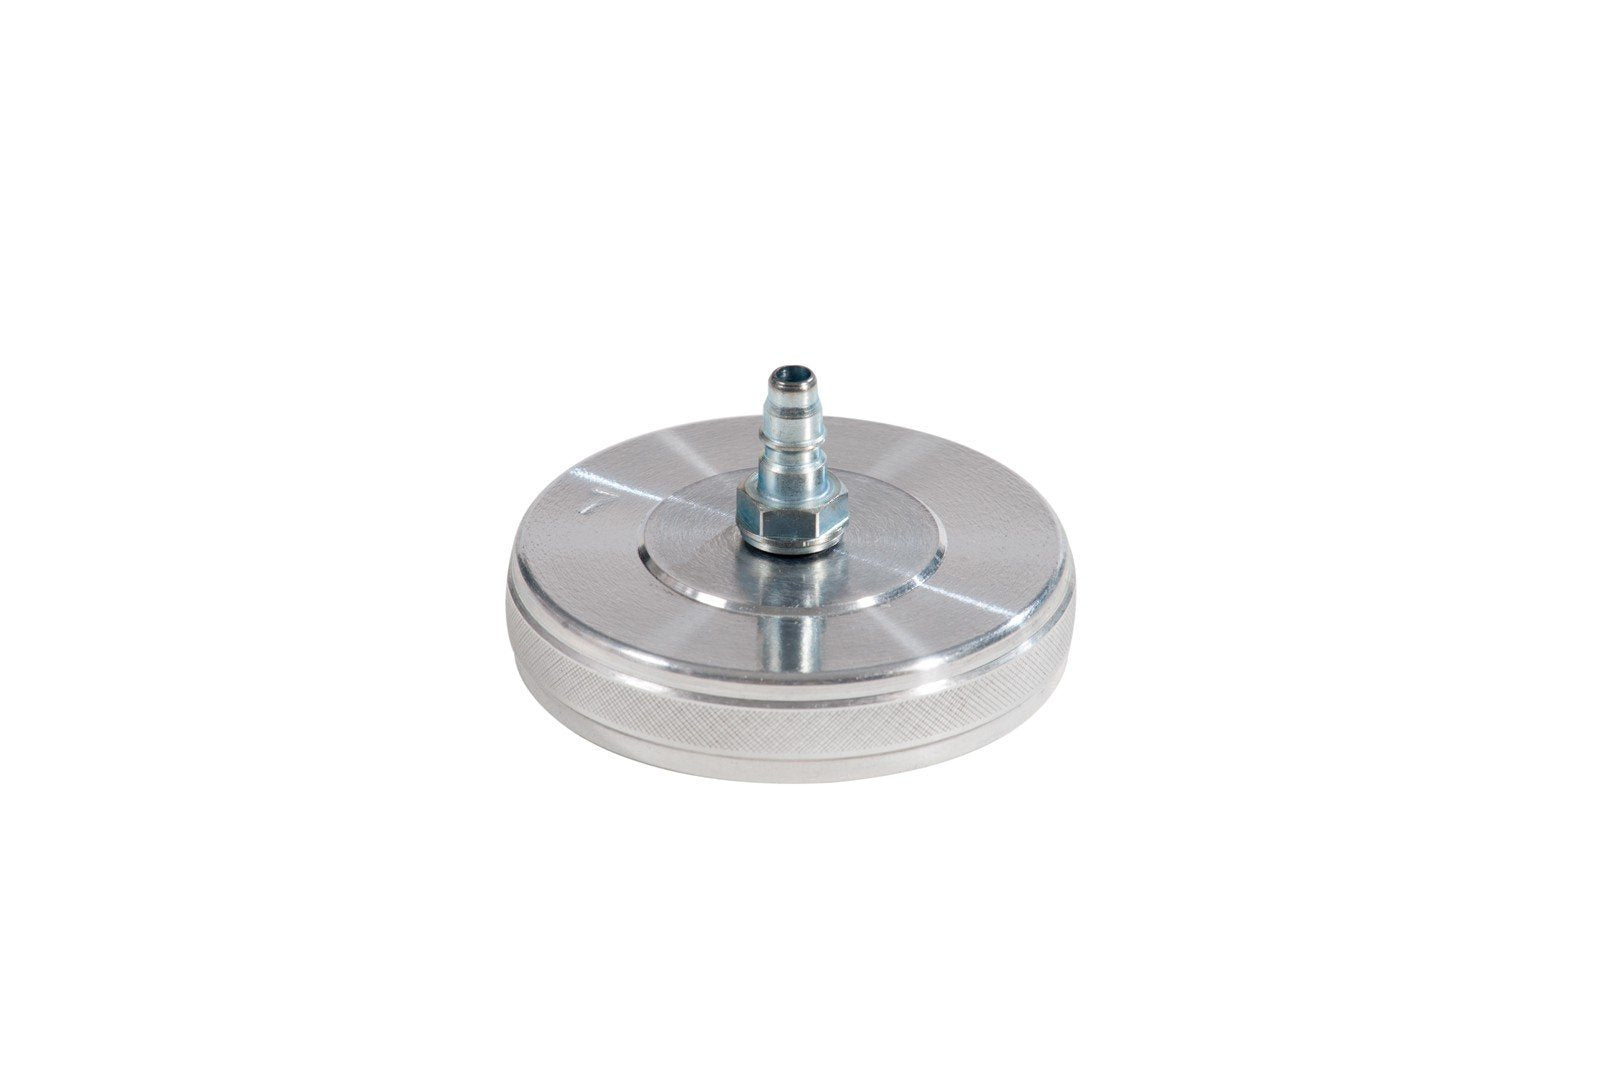 083-1807-000 - Screw plug model 7 diameter 64